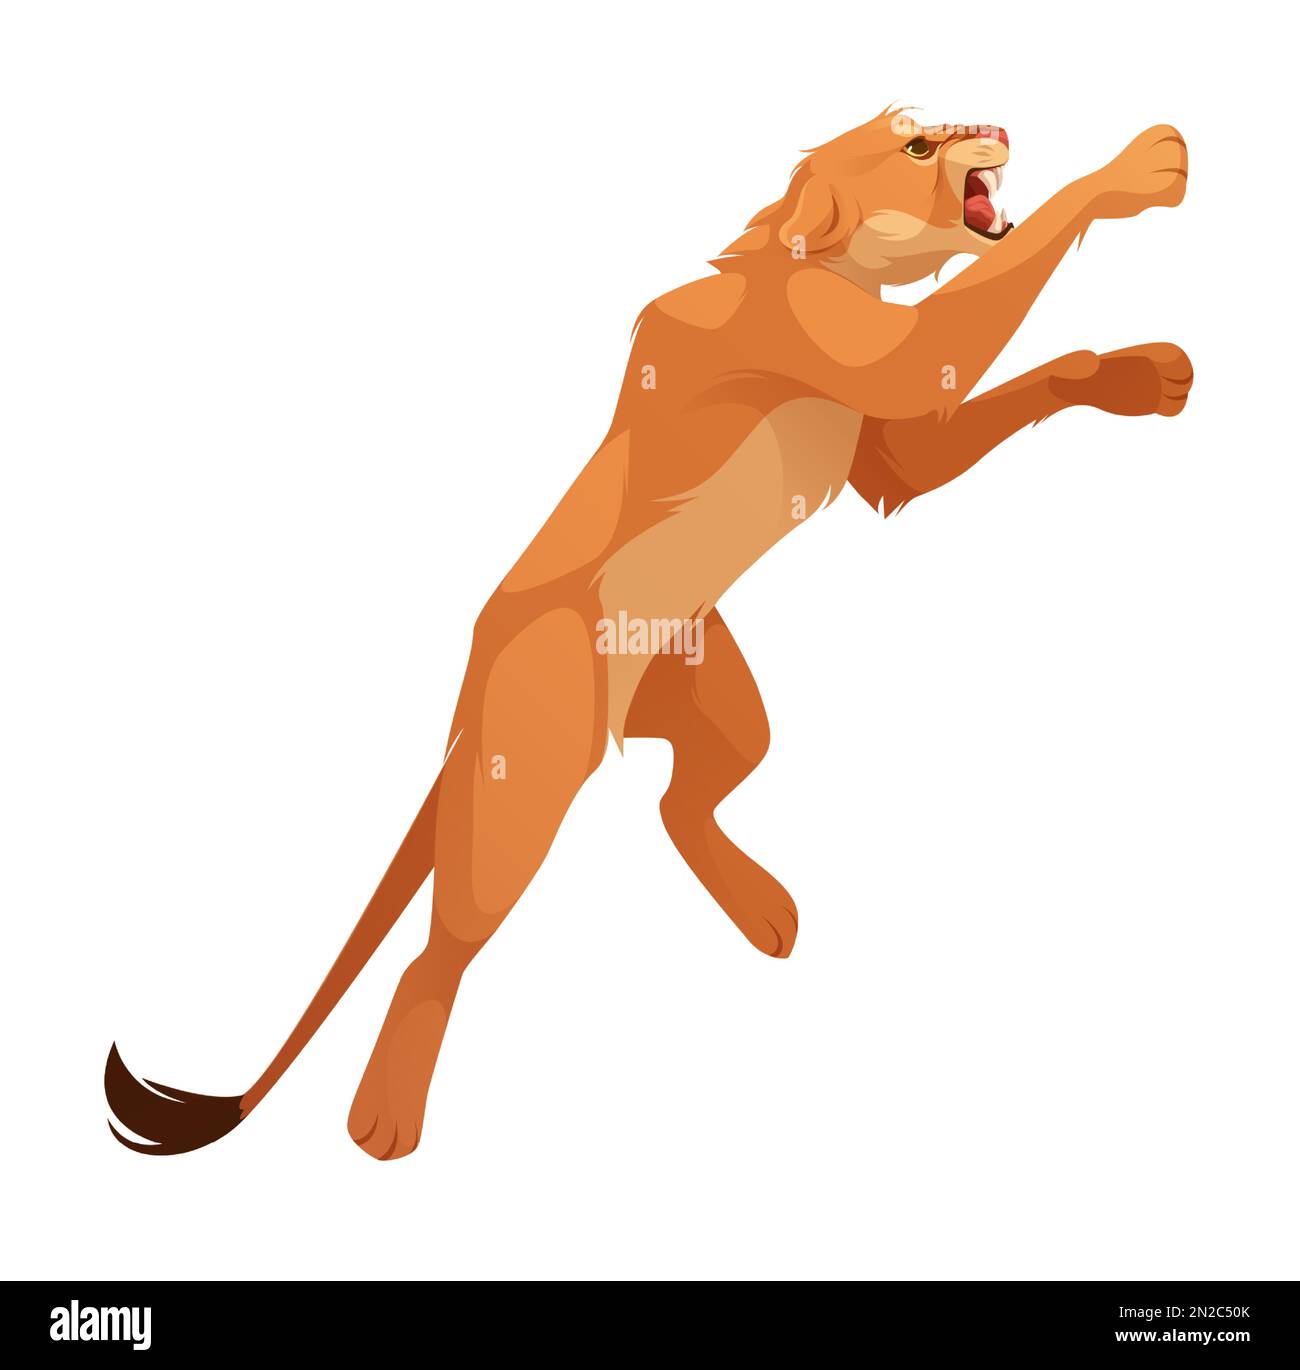 Löwin, wilde Katze springt und beißt. Wütendes afrikanisches Katzentier, weibliche Löwenfigur in hüpfender Pose isoliert auf weißem Hintergrund, Vektorgrafik Stock Vektor